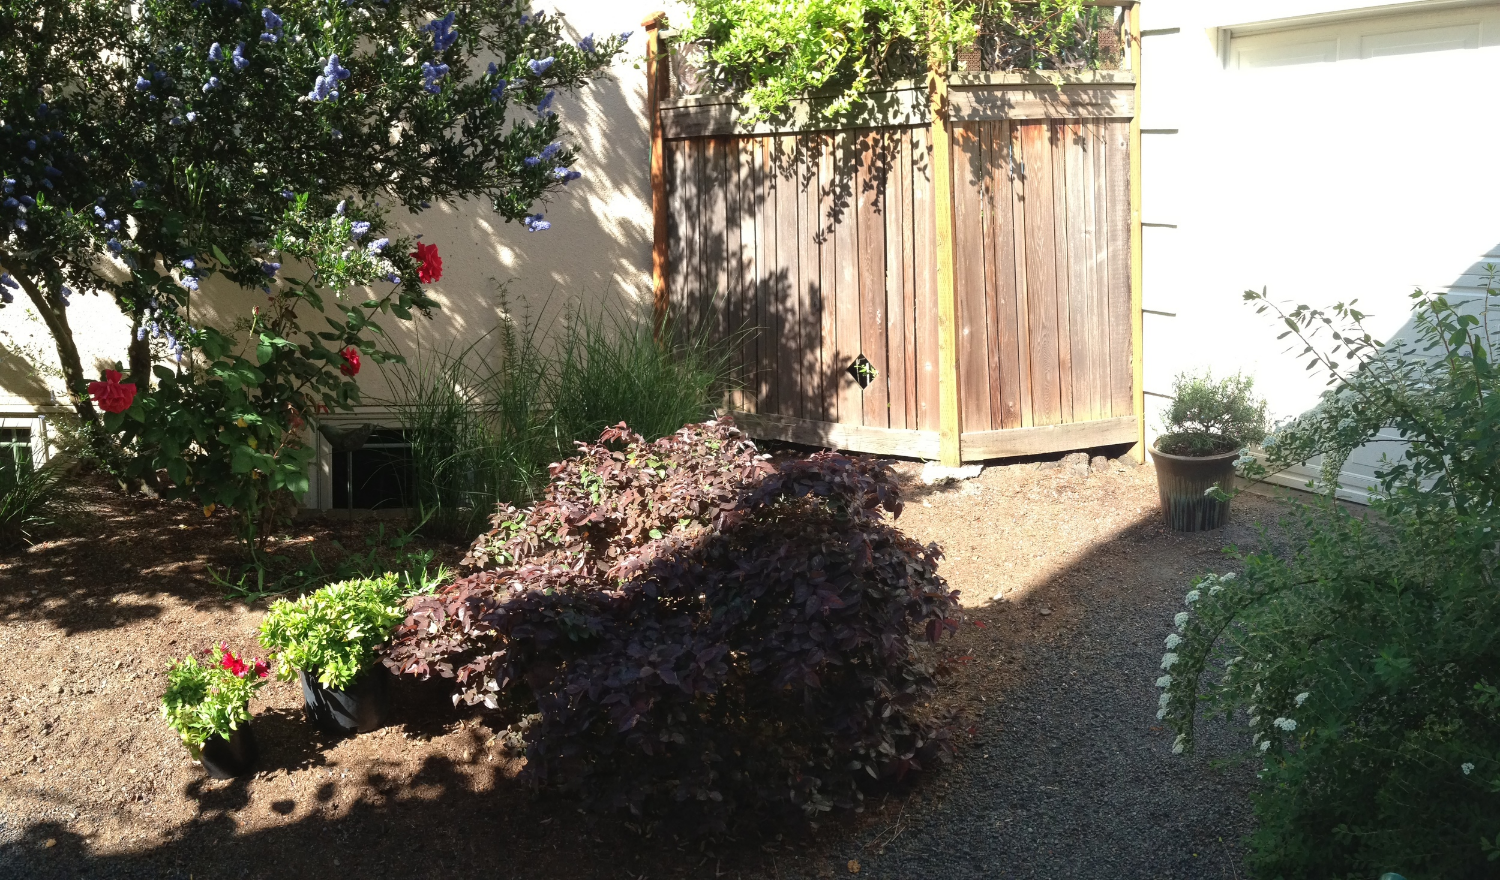 清除植物后。紫色叶子的Loropetalum(中间)，看起来已经更“舒服”了。金银花藤已经修剪过了。小植物和多余的花盆被移除;只剩下健康的盆栽迷迭香。